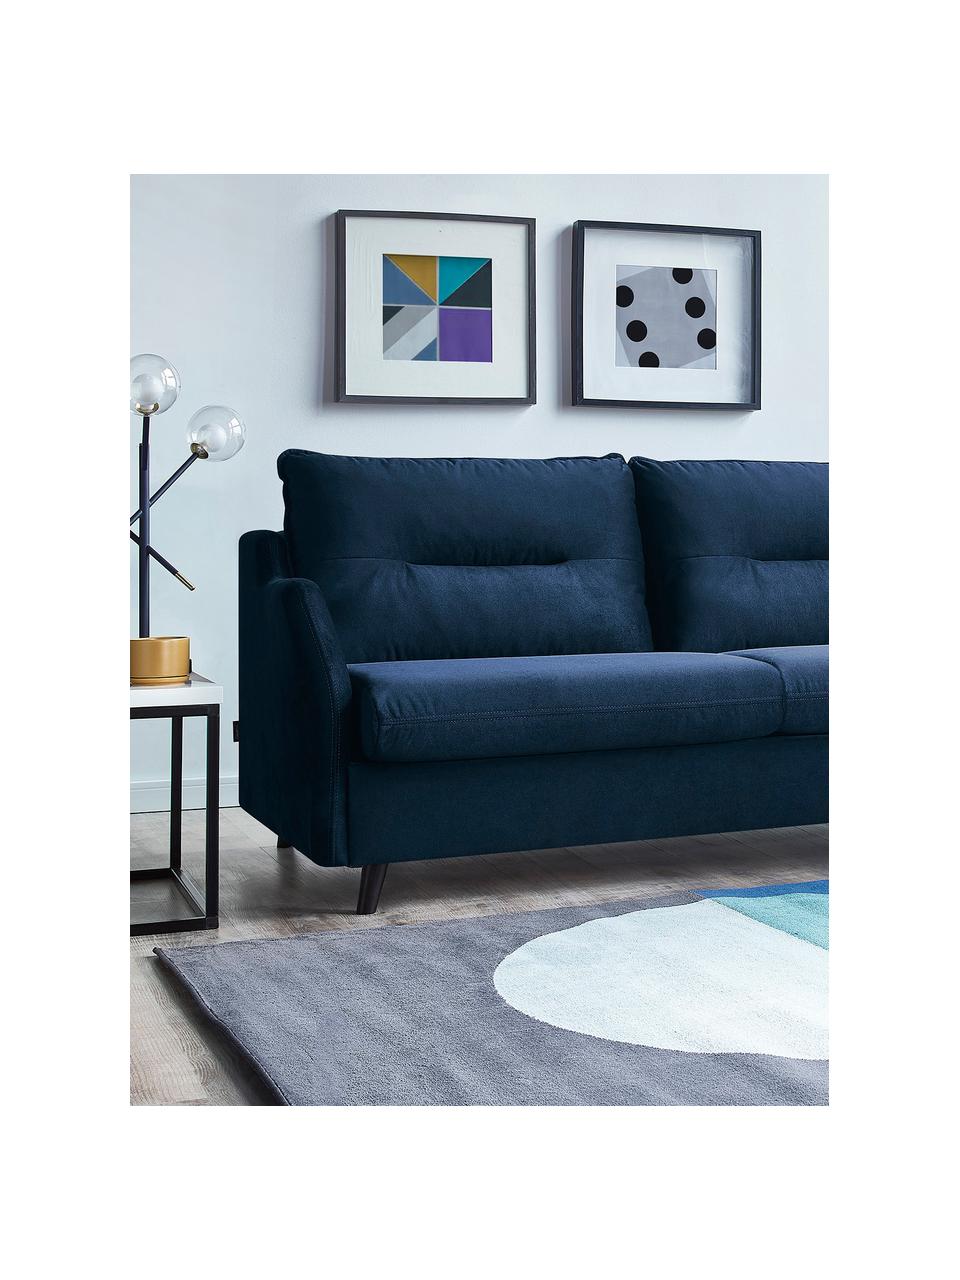 Sofa narożna z aksamitu z funkcją spania Loft, Tapicerka: 100% aksamit poliestrowy, Nogi: metal lakierowany, Granatowy, S 275 x G 181 cm